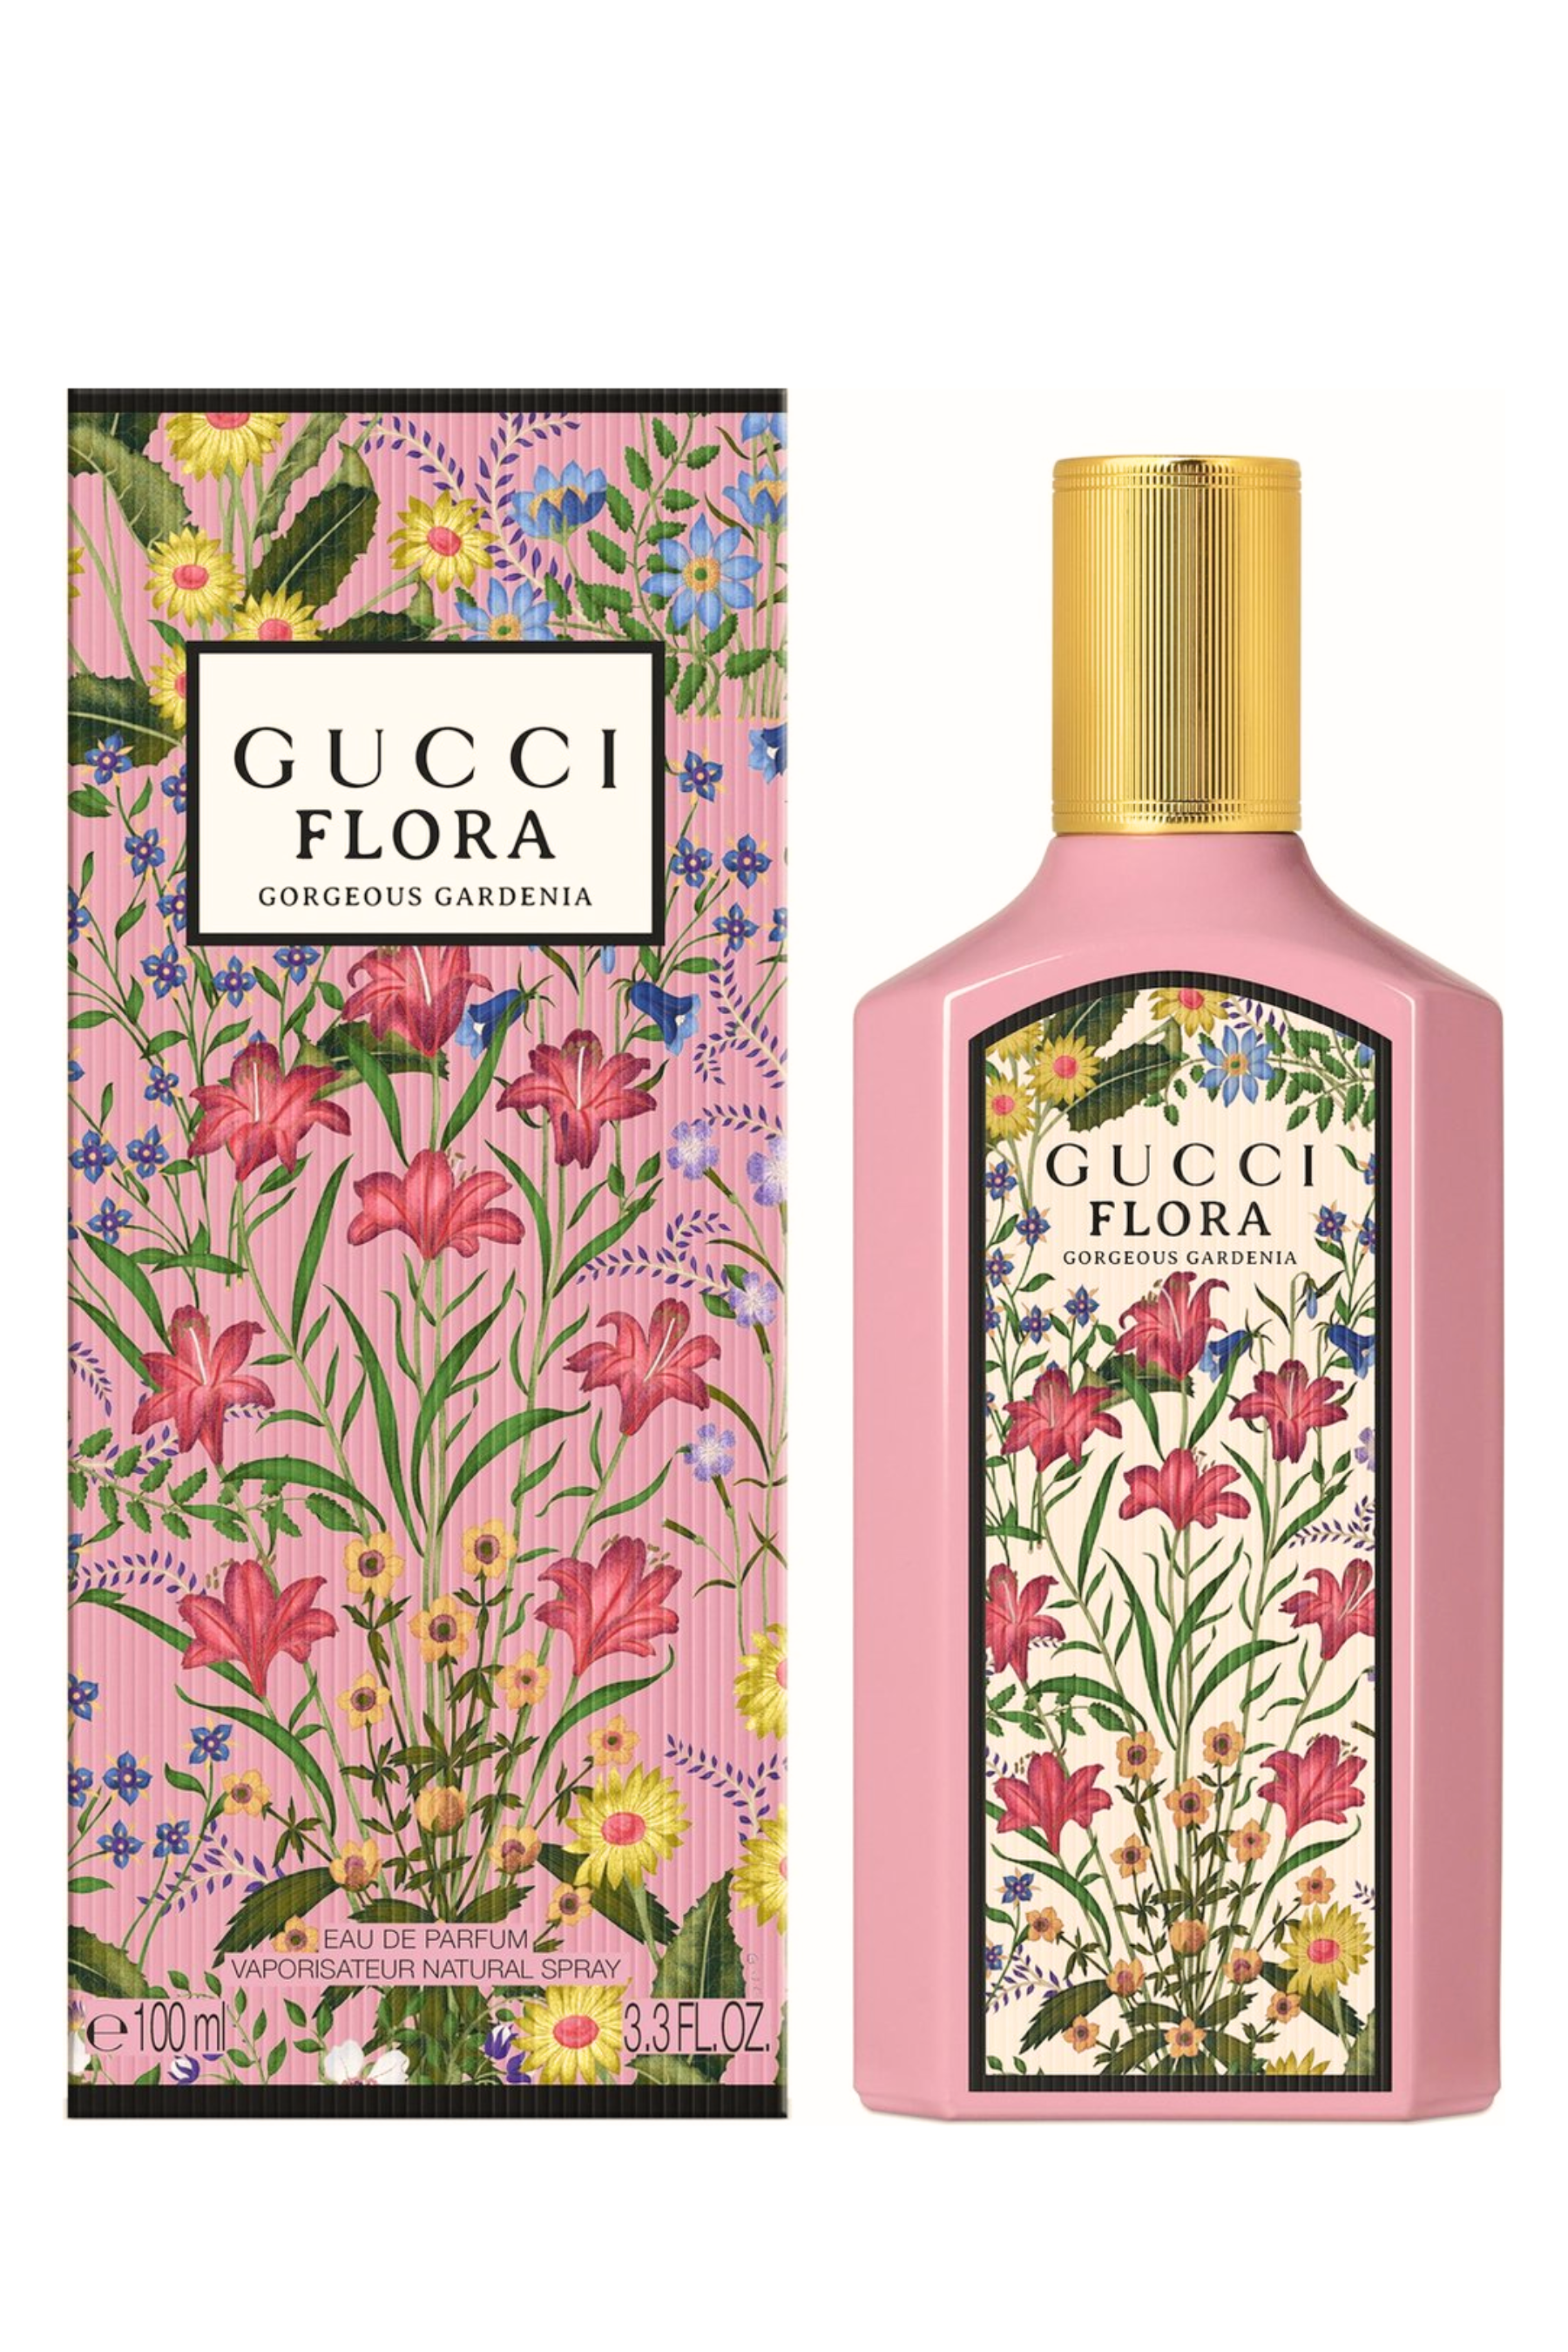 Gucci | Flora Gorgeous Gardenia Eau de Parfum